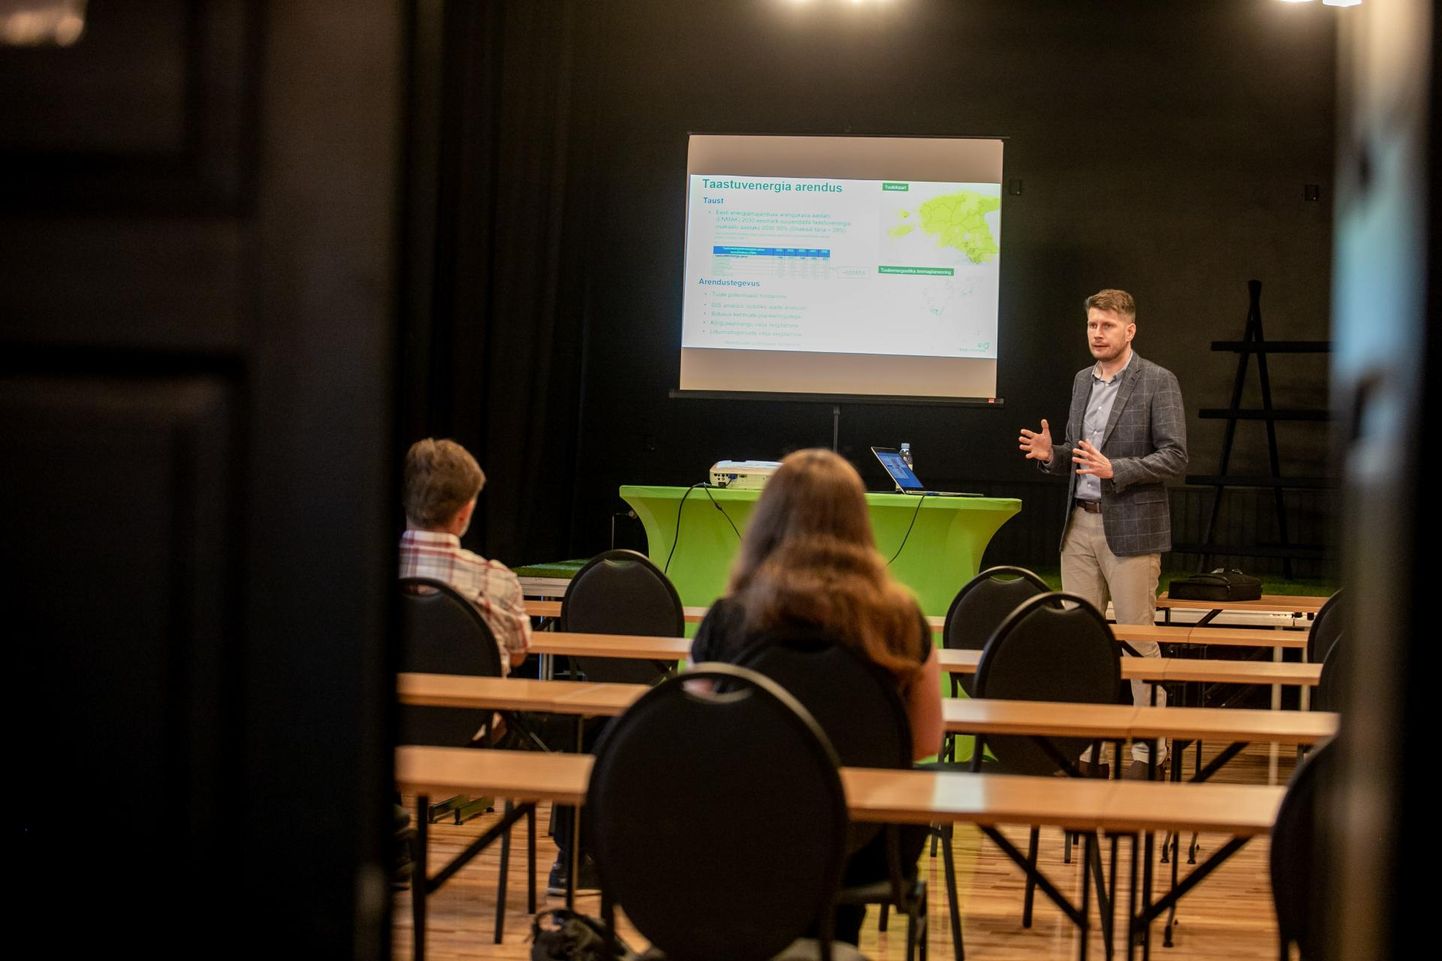 Eesti Energia taastuvenergia projektijuht Oliver Zereen tutvustas juuni keskel Tori rahvamajas tuugenite püstitamise plaane kohalikule rahvale.